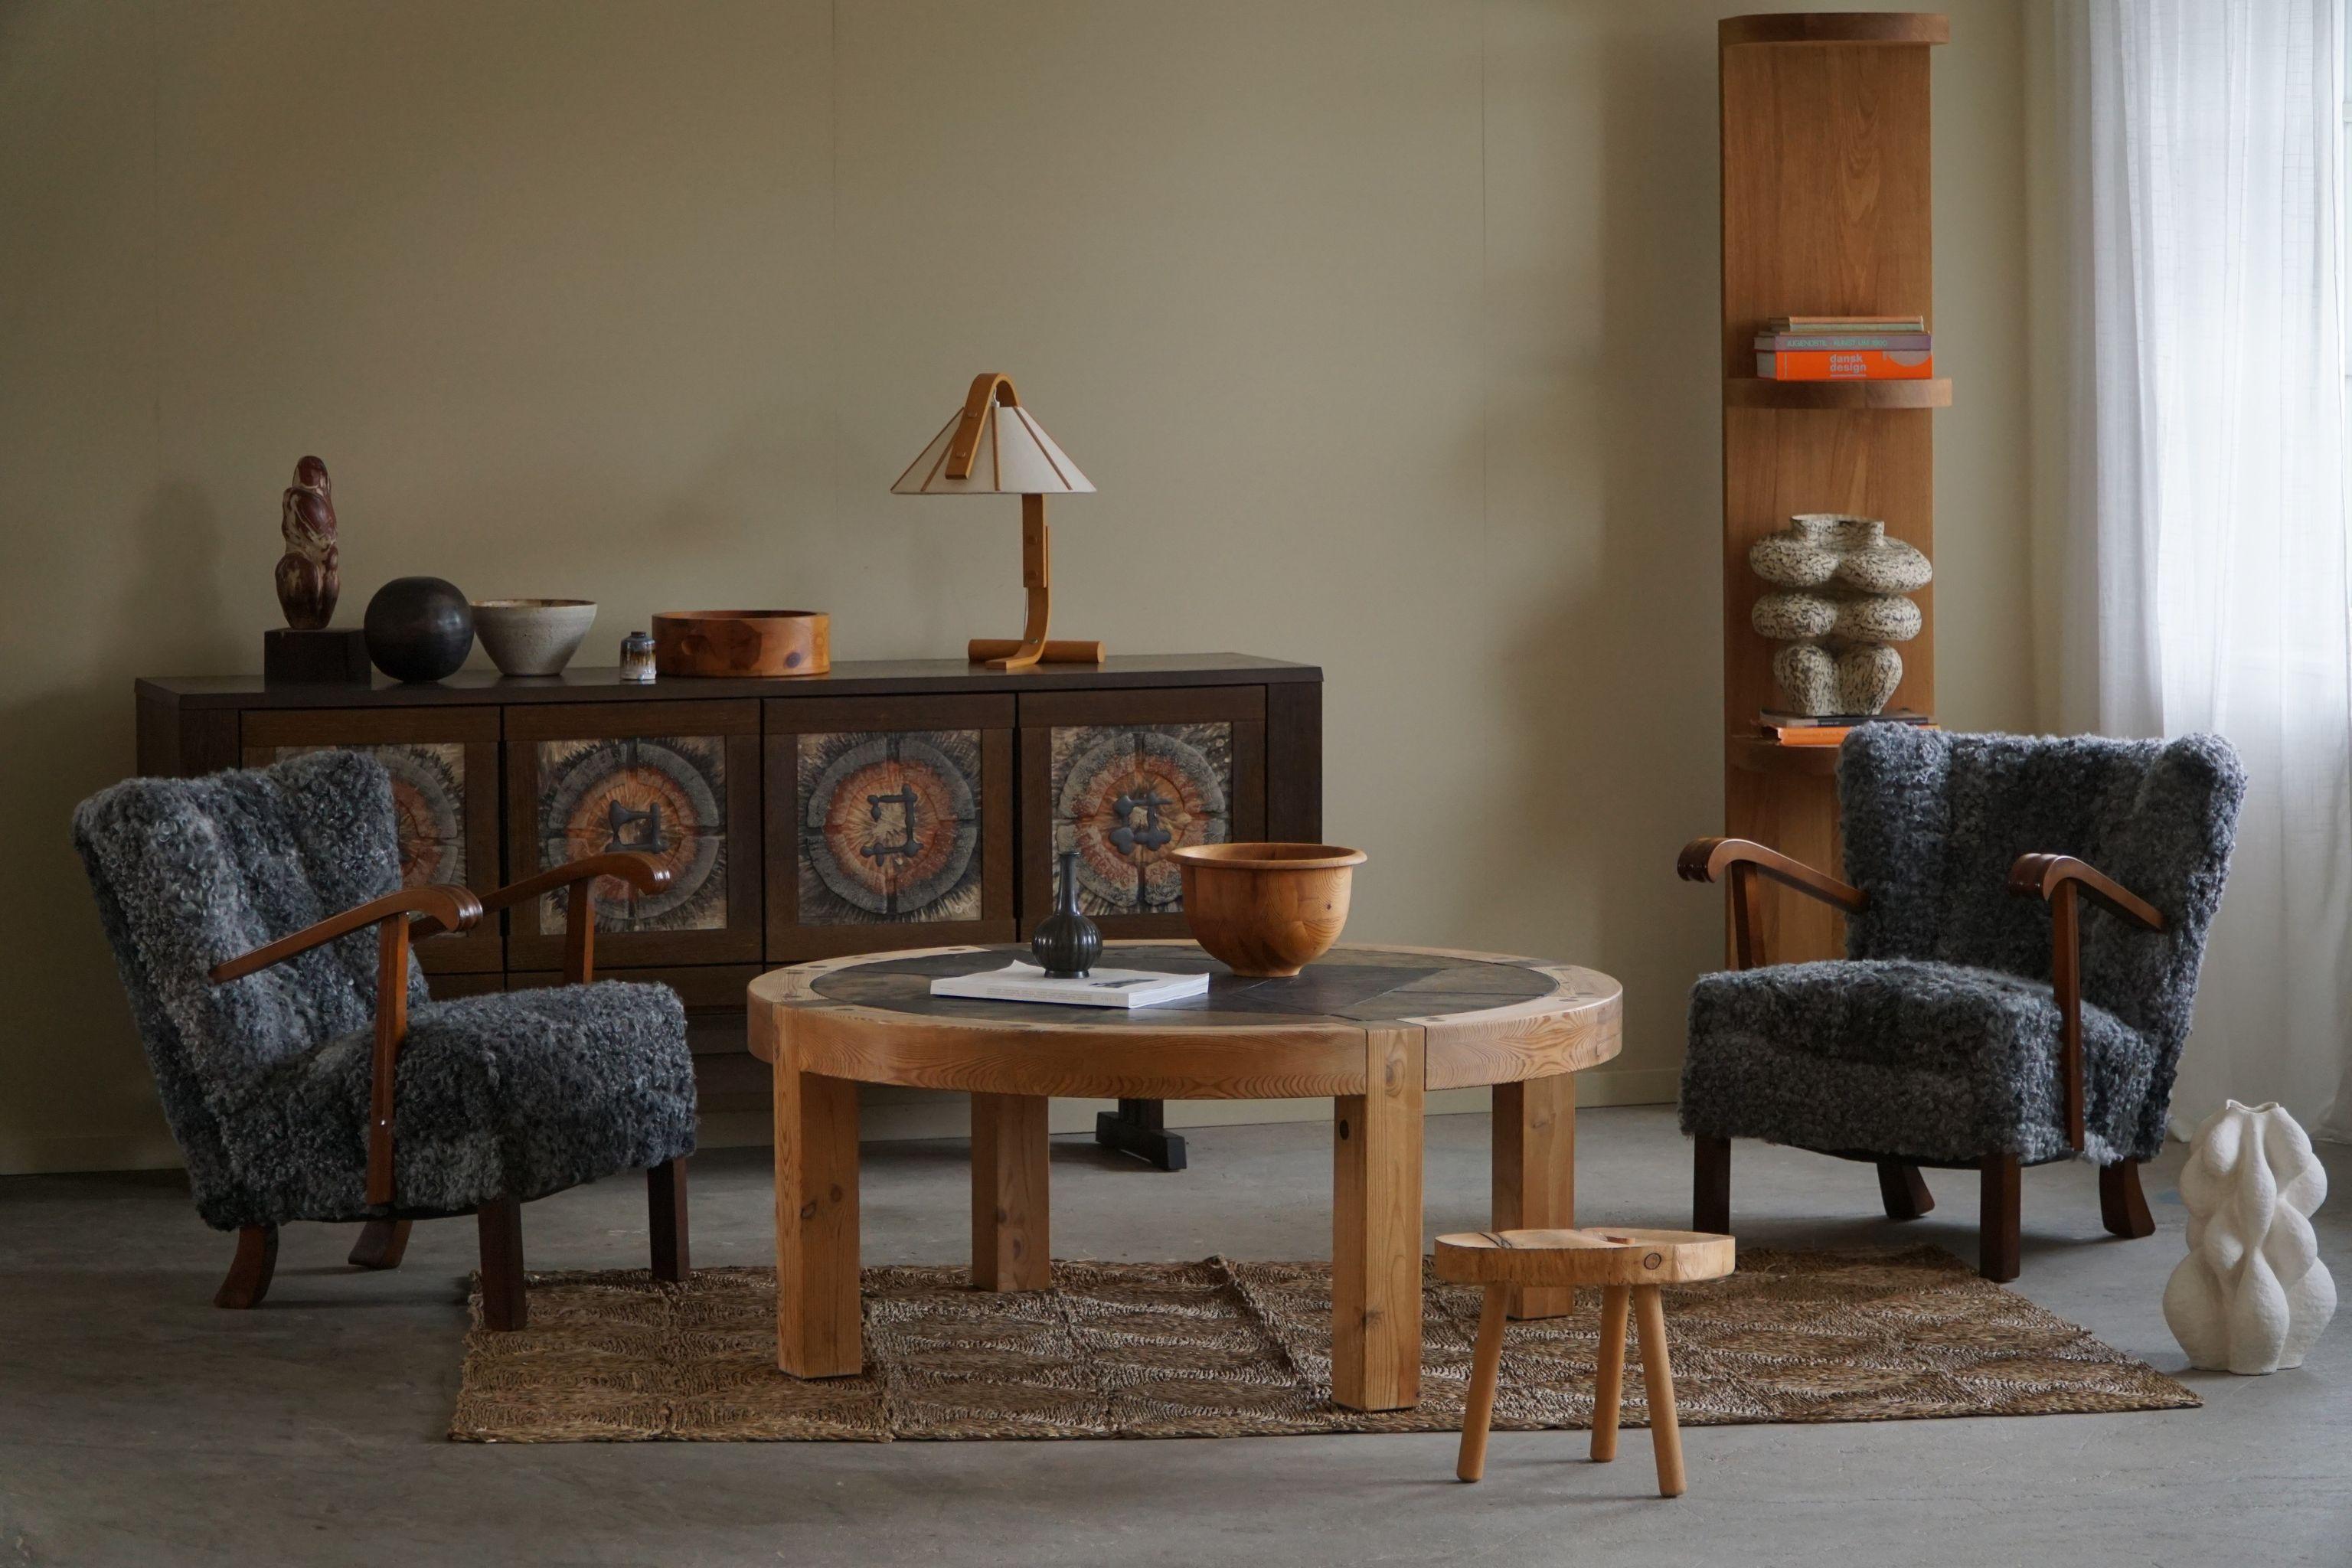 Très belle table basse / table de canapé brutaliste ronde en pin massif avec des carreaux de céramique faits à la main et des chevilles apparentes. Fabriqué au Danemark dans les années 1970 par Sallingboe. Conçu par Lisbeth Sallingboe.   

Cette